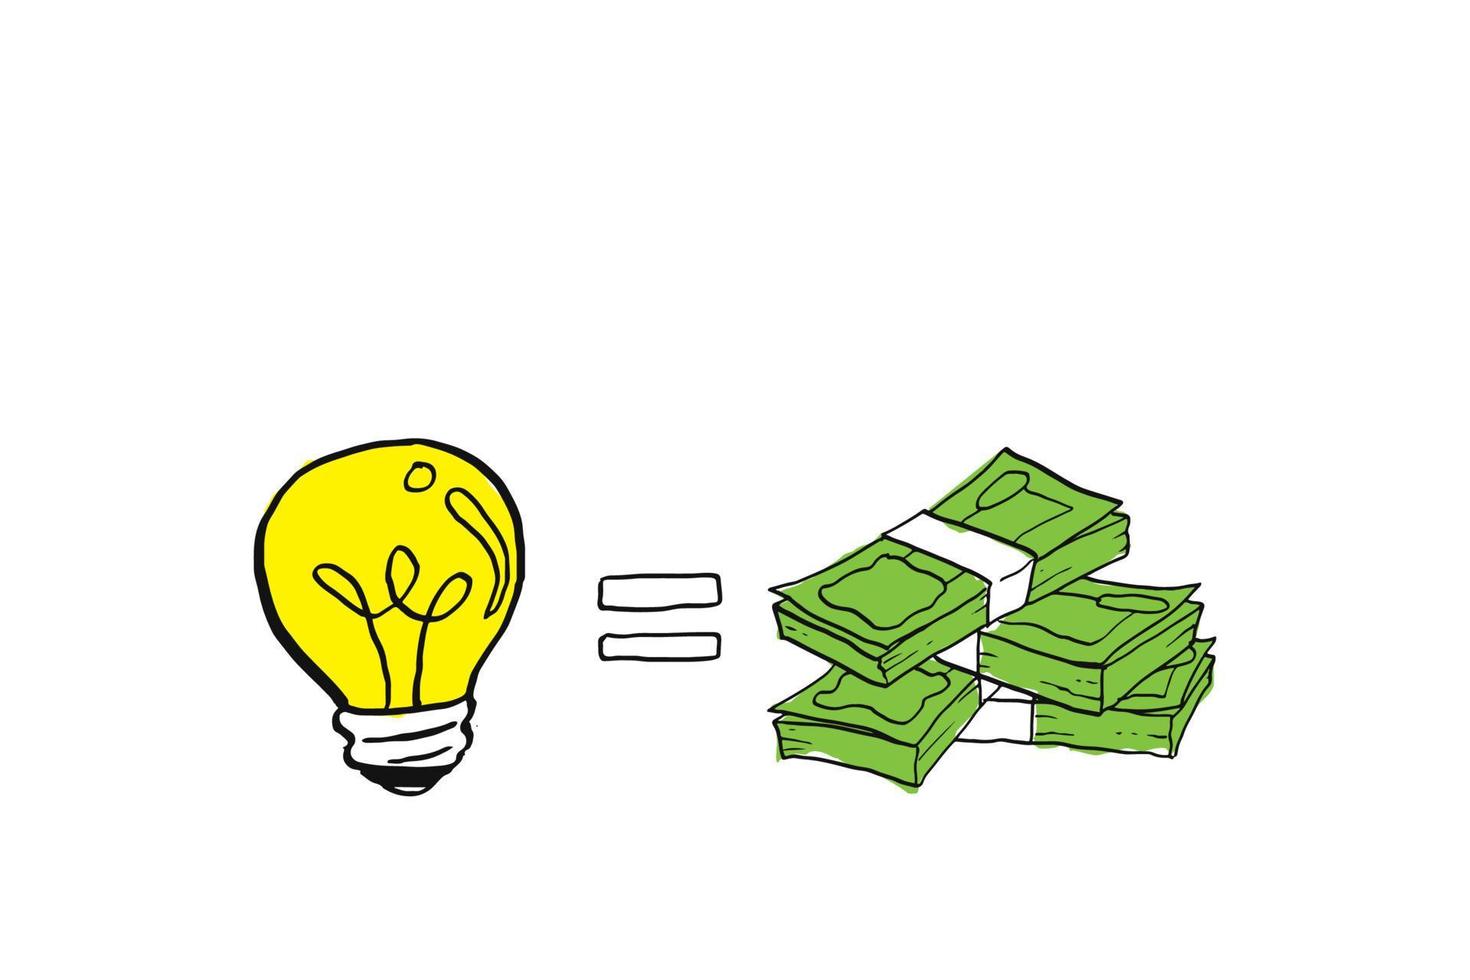 idé lika med pengar. begreppet värde av pengar. tecknad vektor illustration design